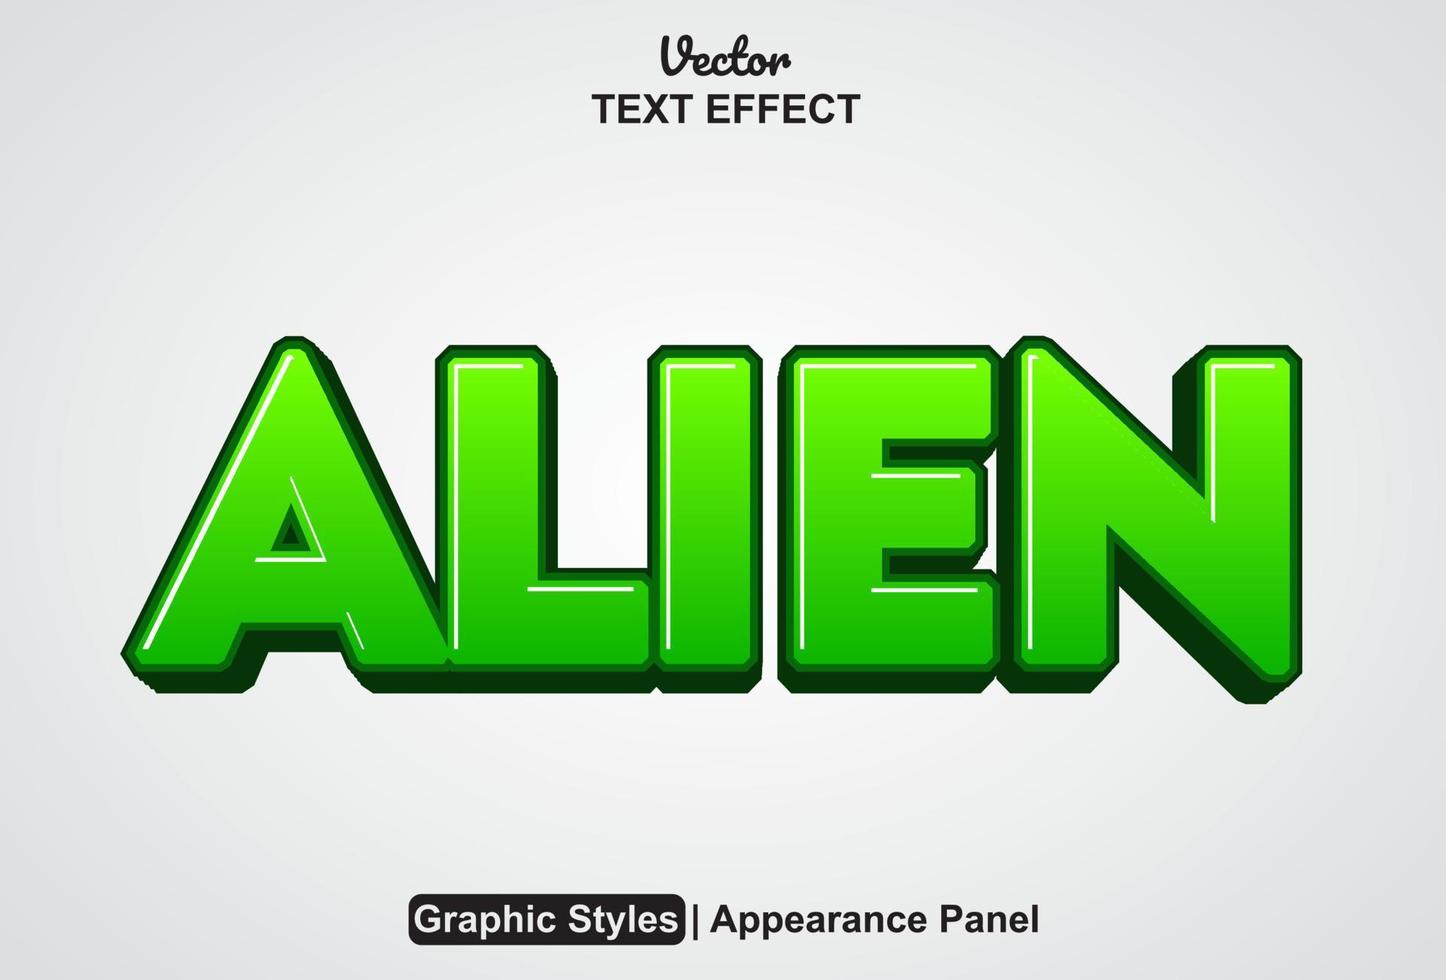 efecto de texto alienígena con estilo gráfico y editable. vector